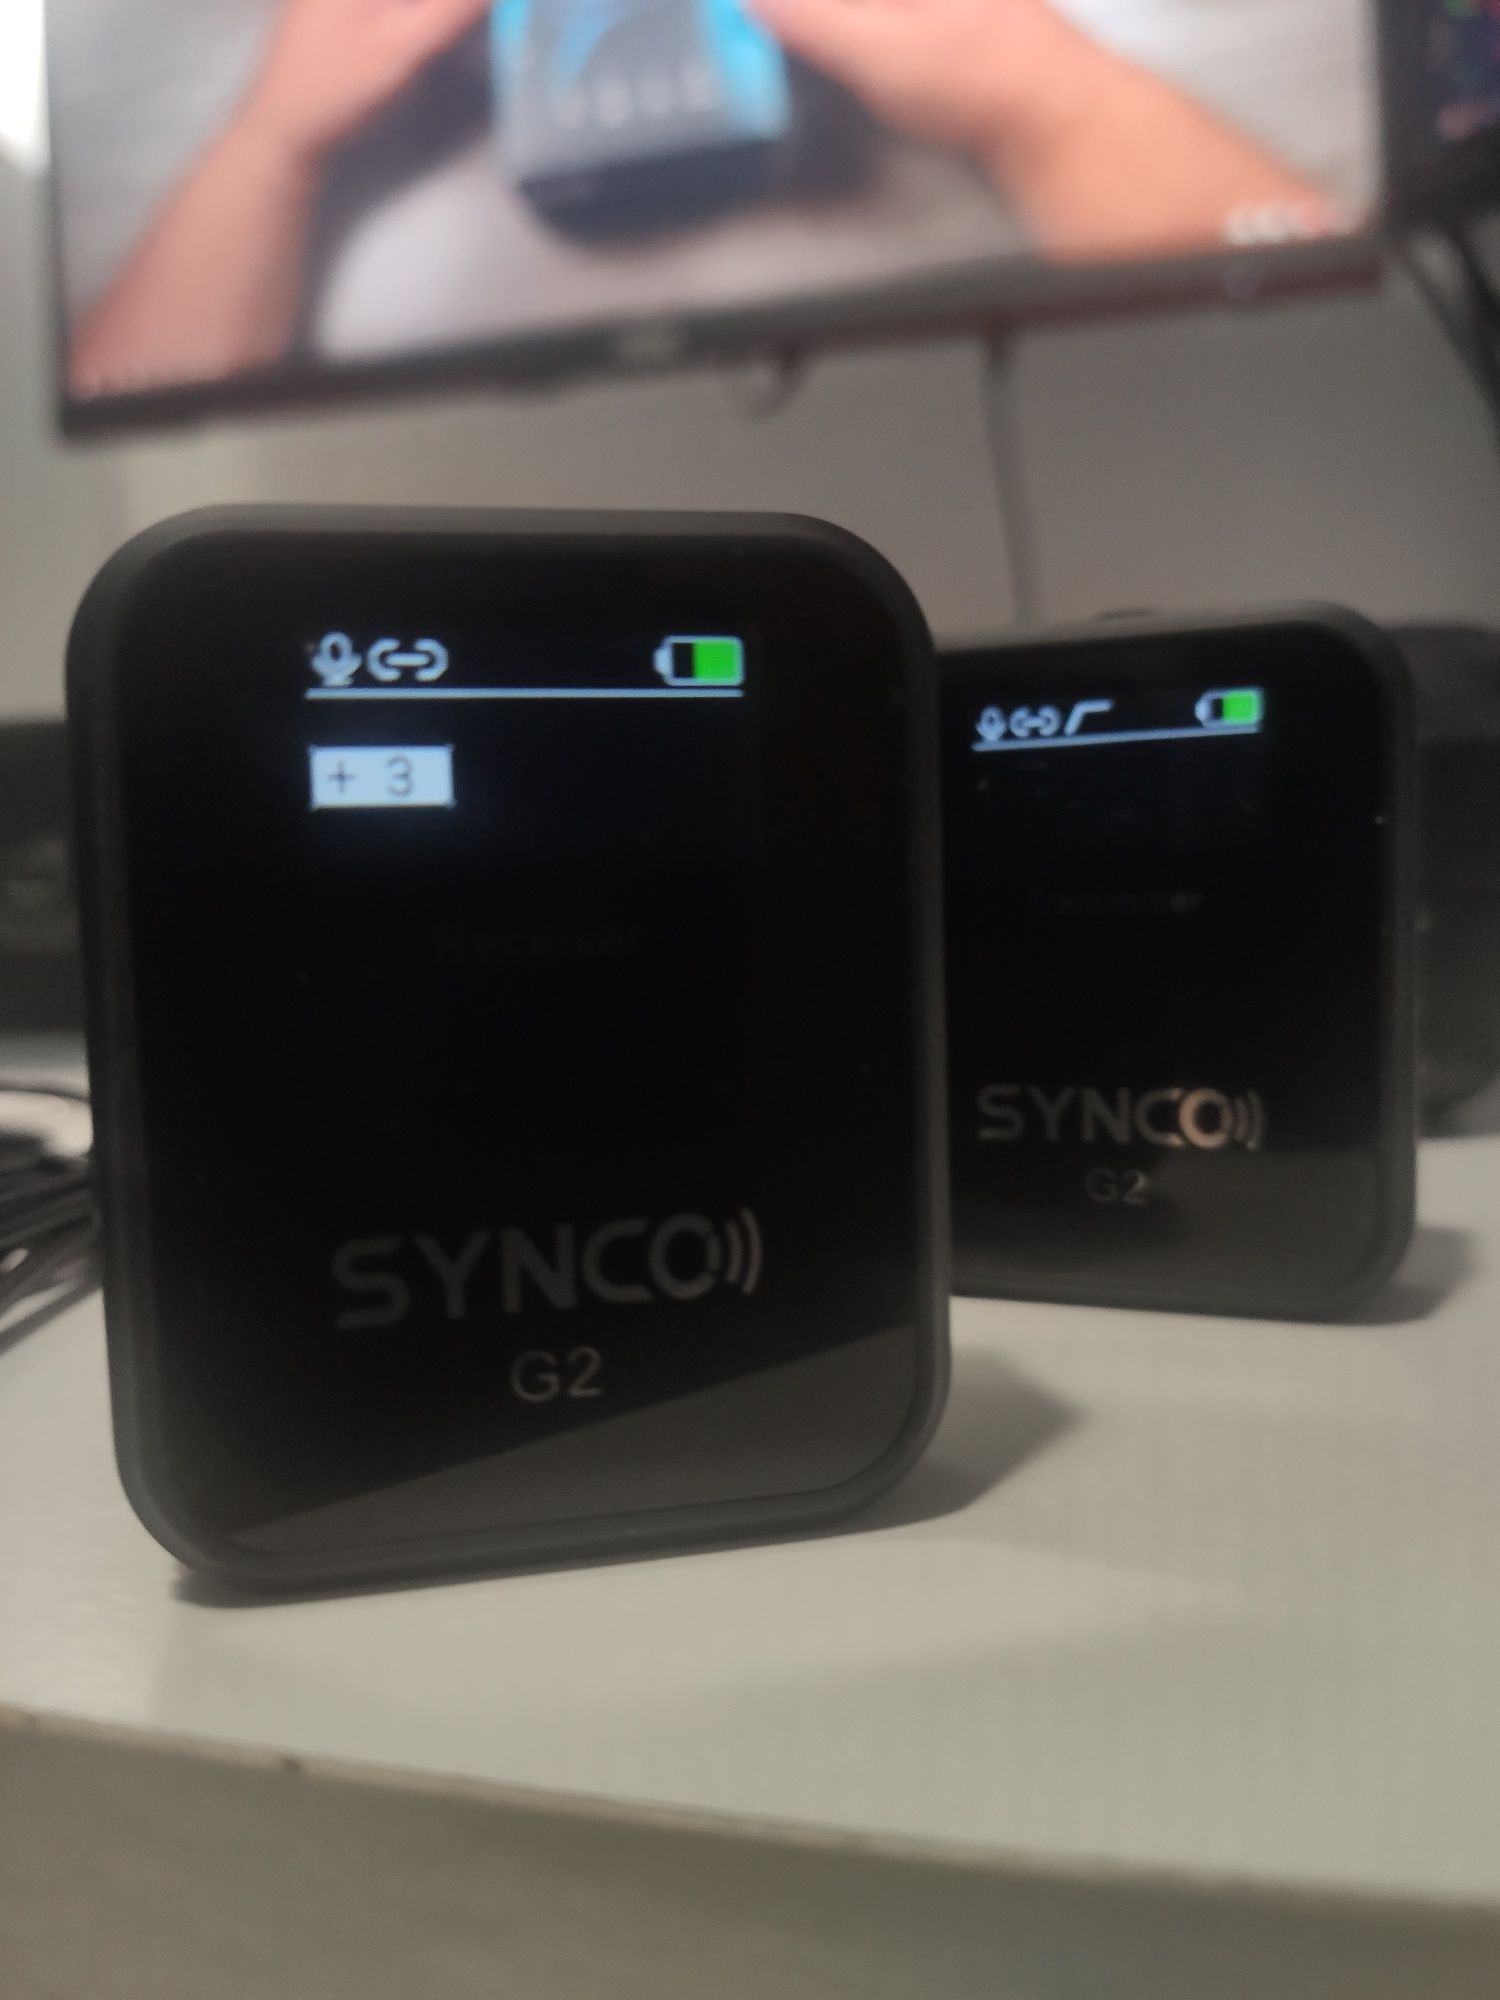 Microfone Synco G2 wireless transmissor / recetor